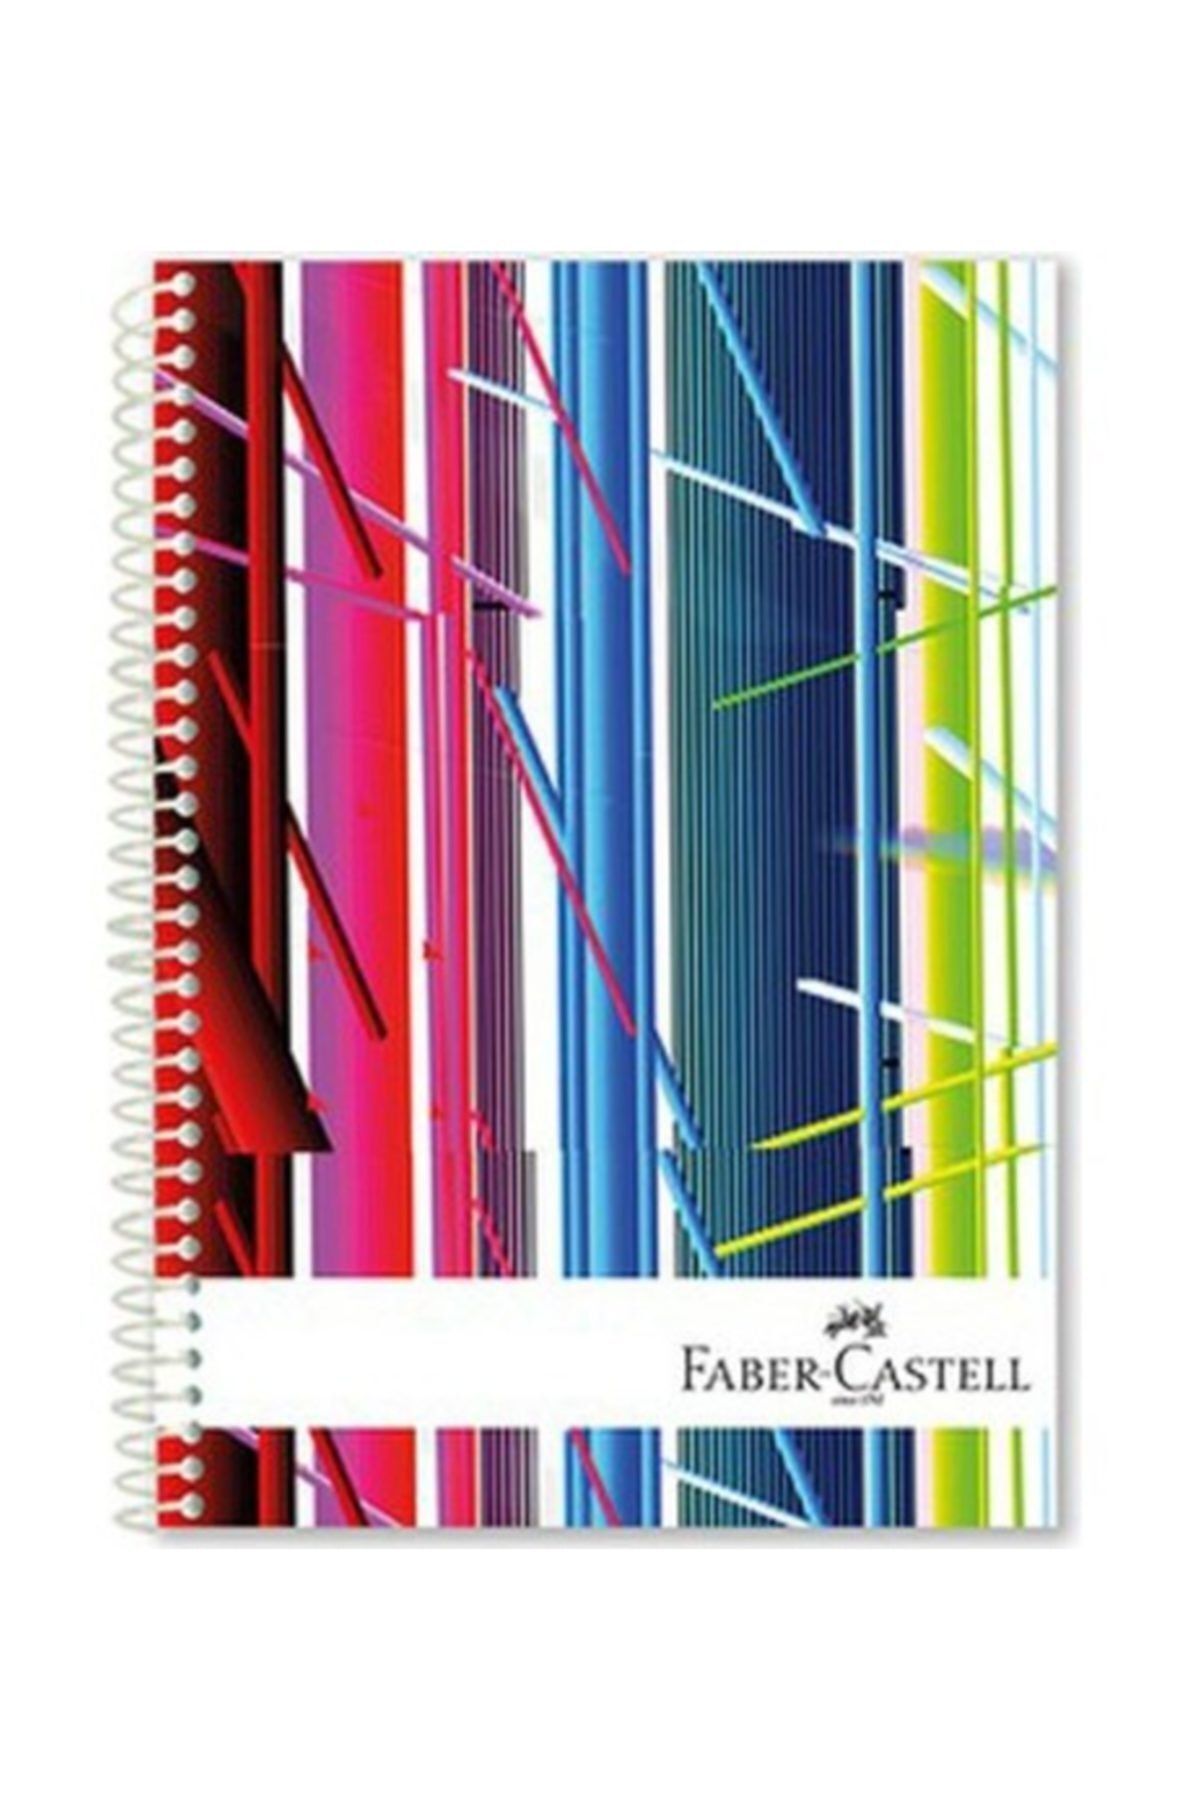 Faber Castell Festival Sert Kapak Seperatörlü Defter 200yp